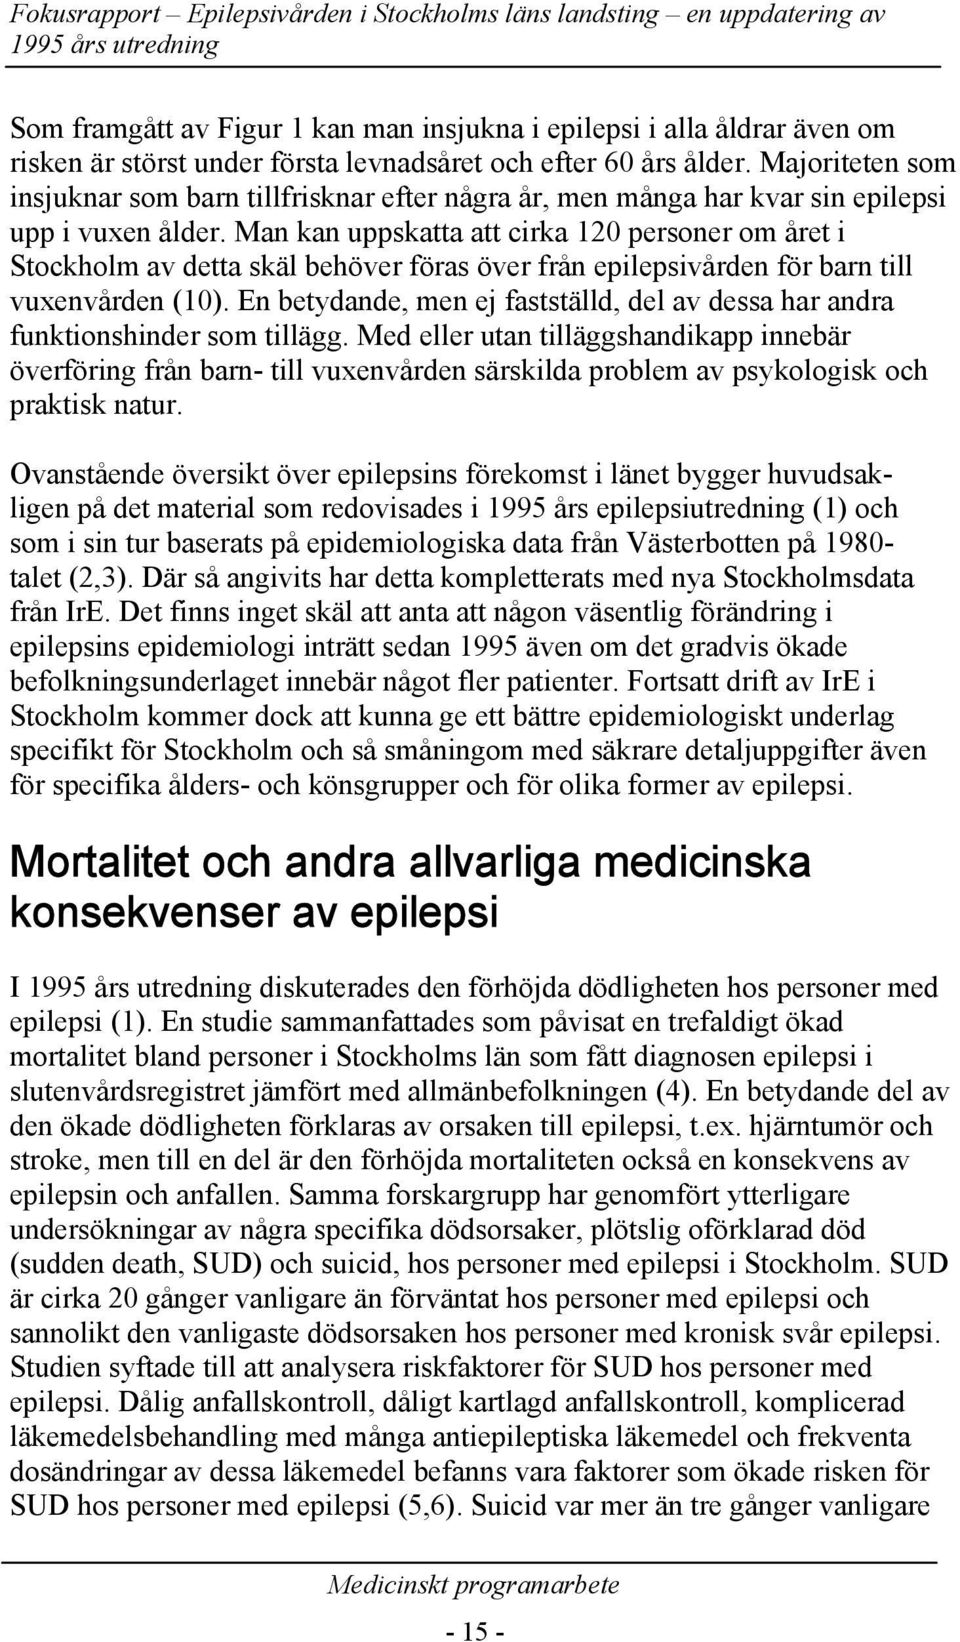 Man kan uppskatta att cirka 120 personer om et i Stockholm av detta skäl behöver föras över från epilepsivden för barn till vuxenvden (10).